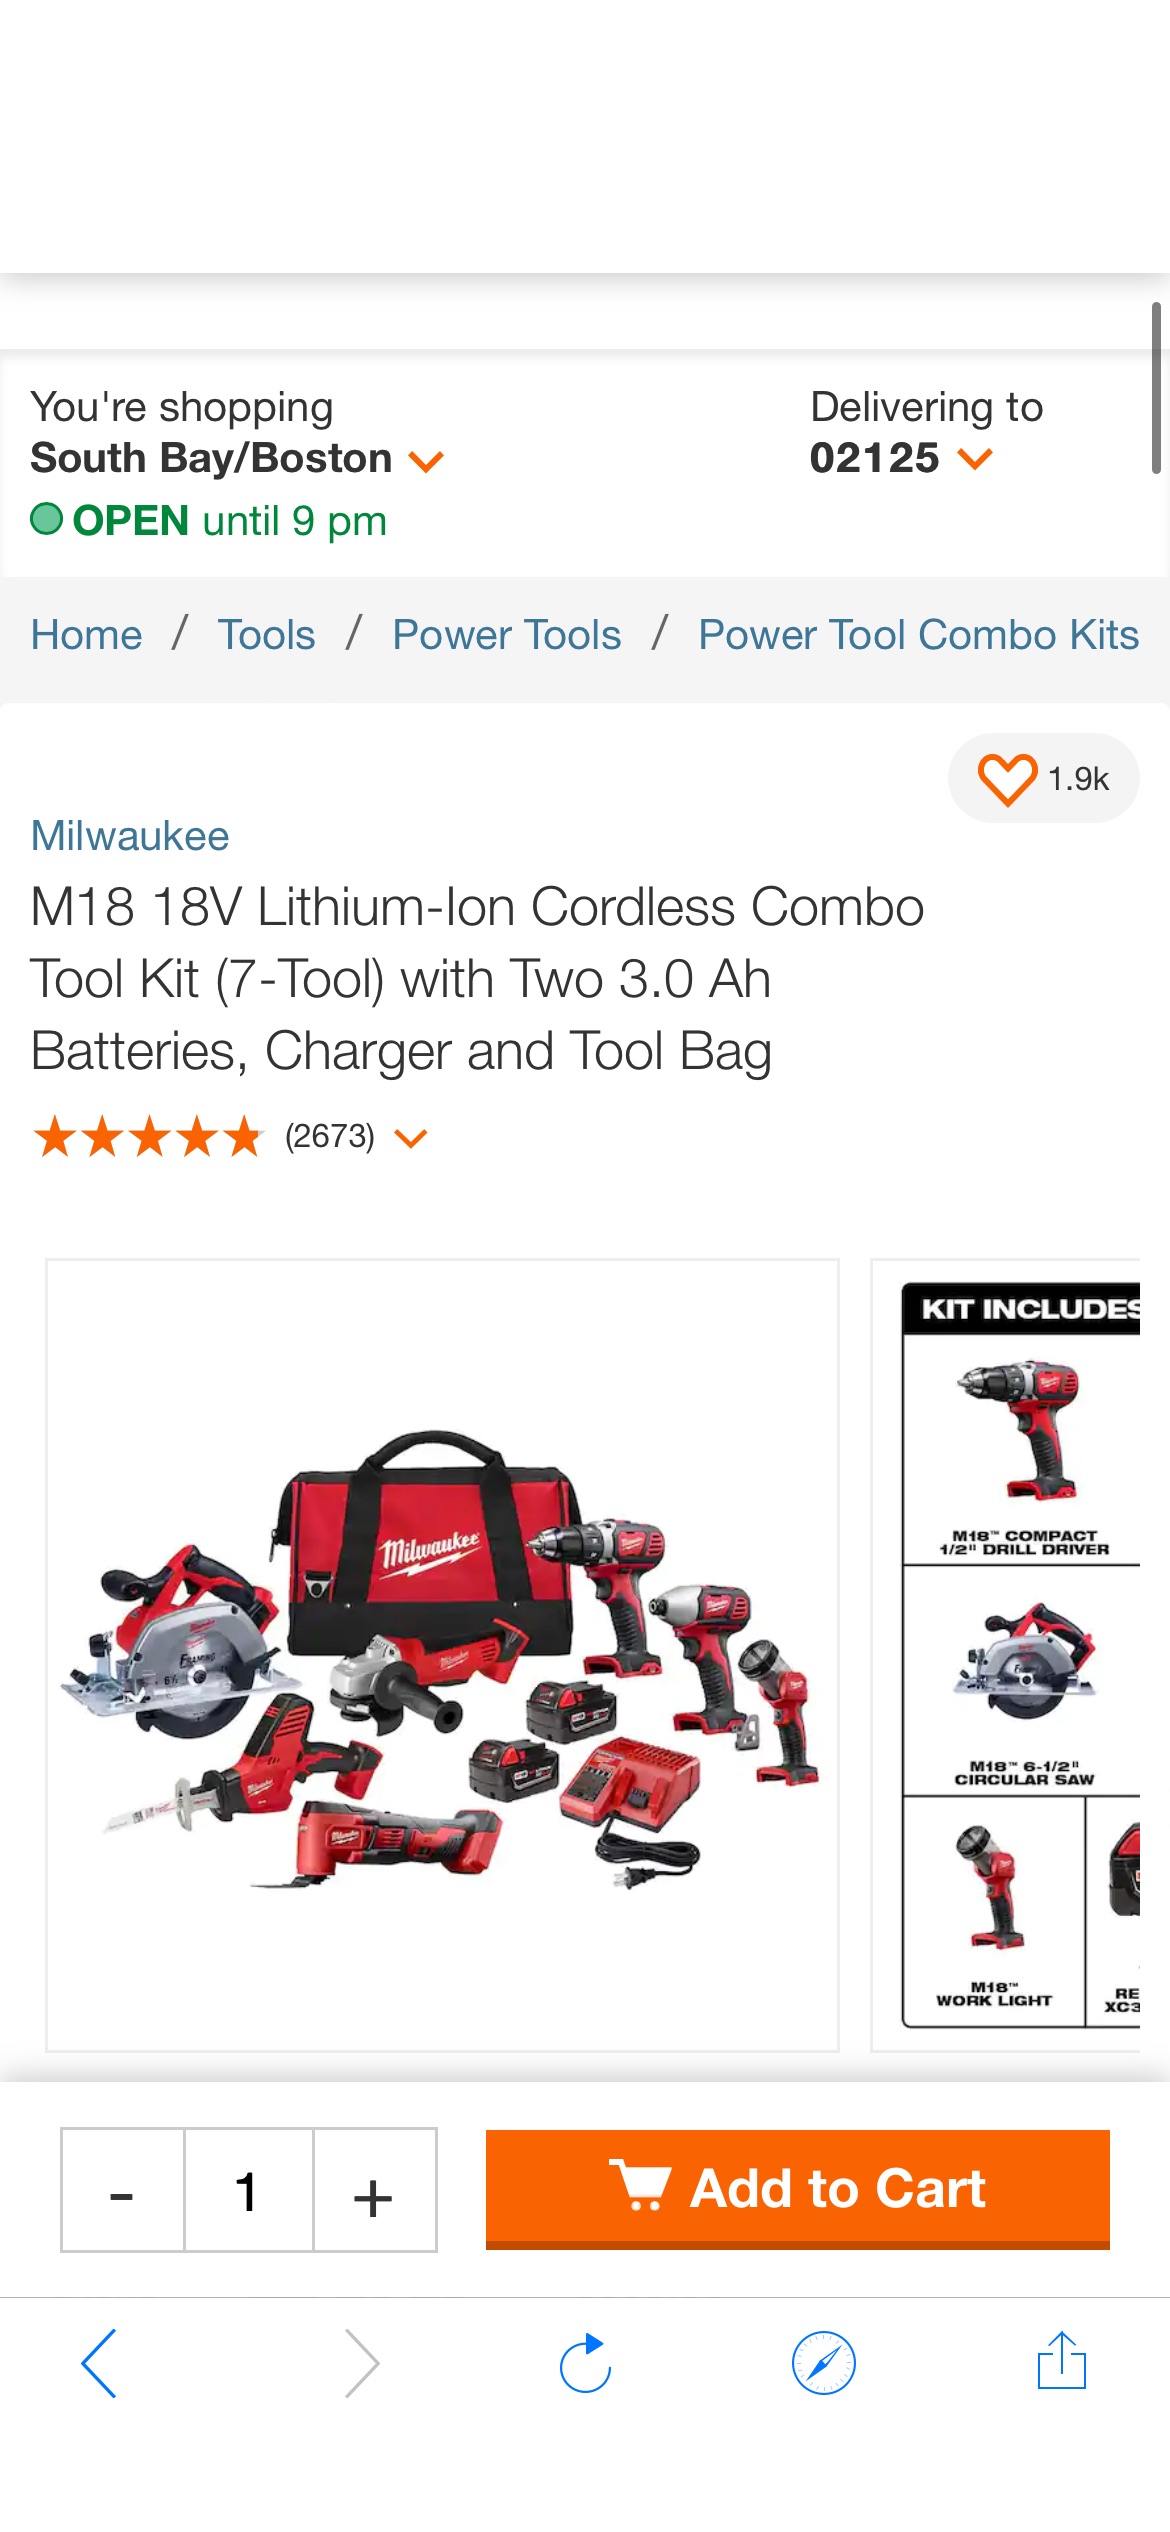 米沃斯M18 18V Lithium-Ion Cordless Combo Tool Kit (7-Tool) with Two 3.0 Ah Batteries, Charger and Tool bag